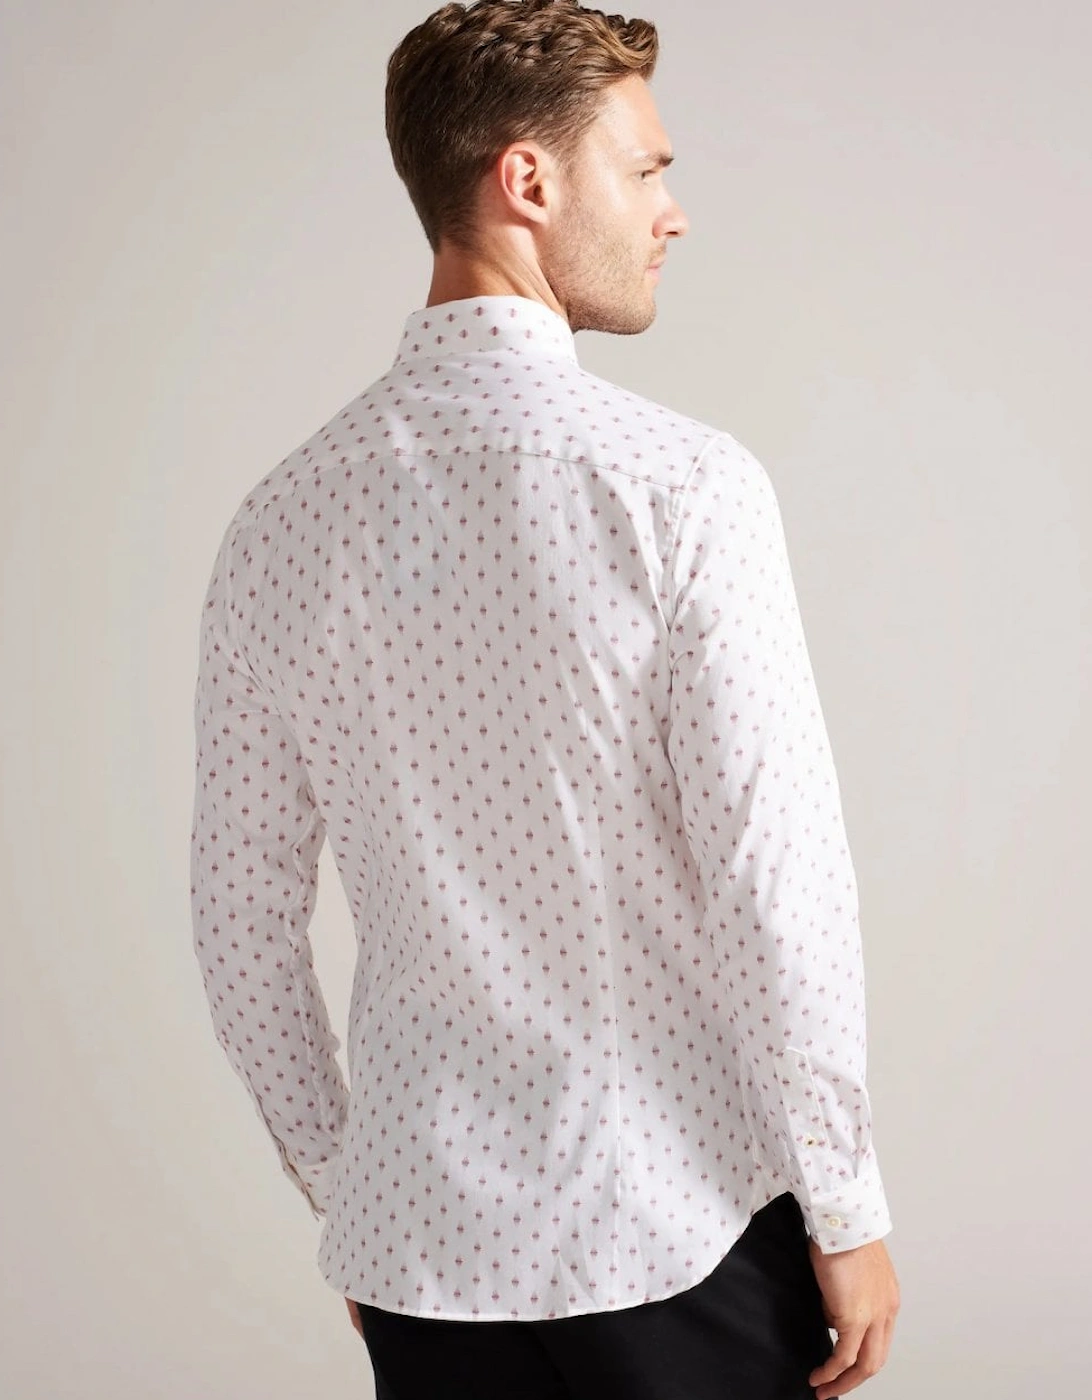 Ardea Mens Long Sleeve Geometric Print Shirt